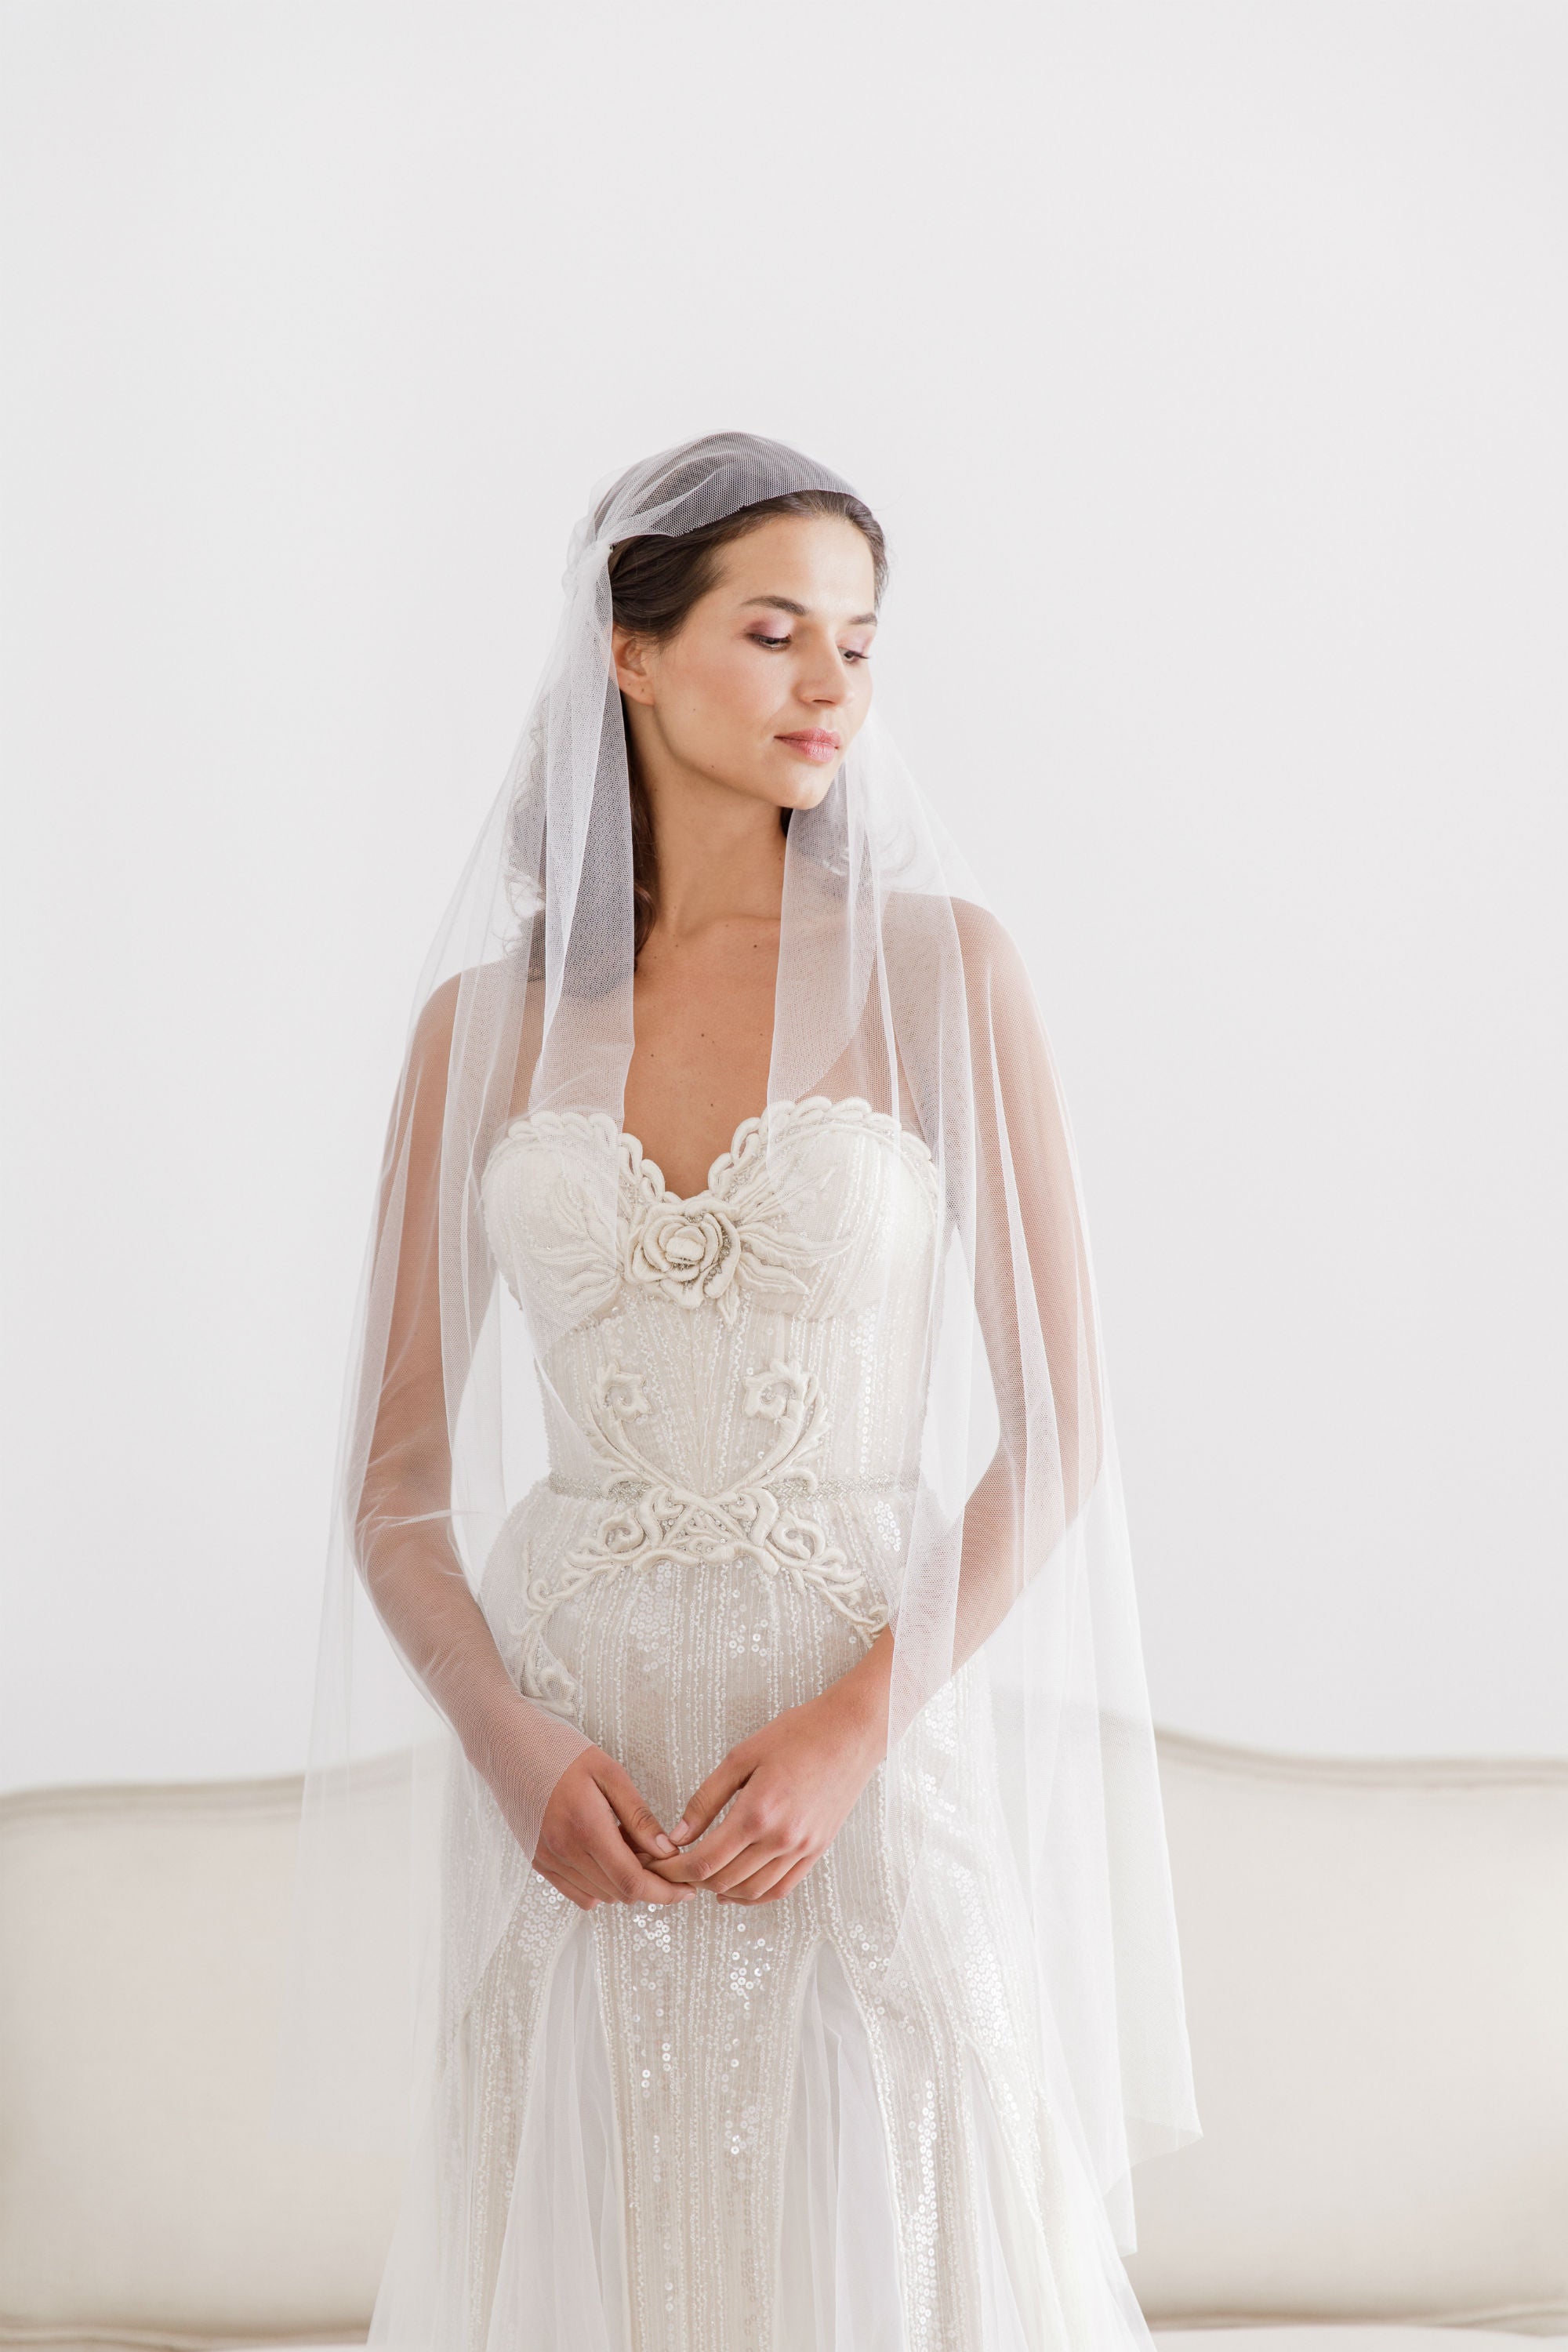 Custom Veil 'Custom veil- deposit for bespoke veil'- £50 Custom wedding veil, the bespoke veil option